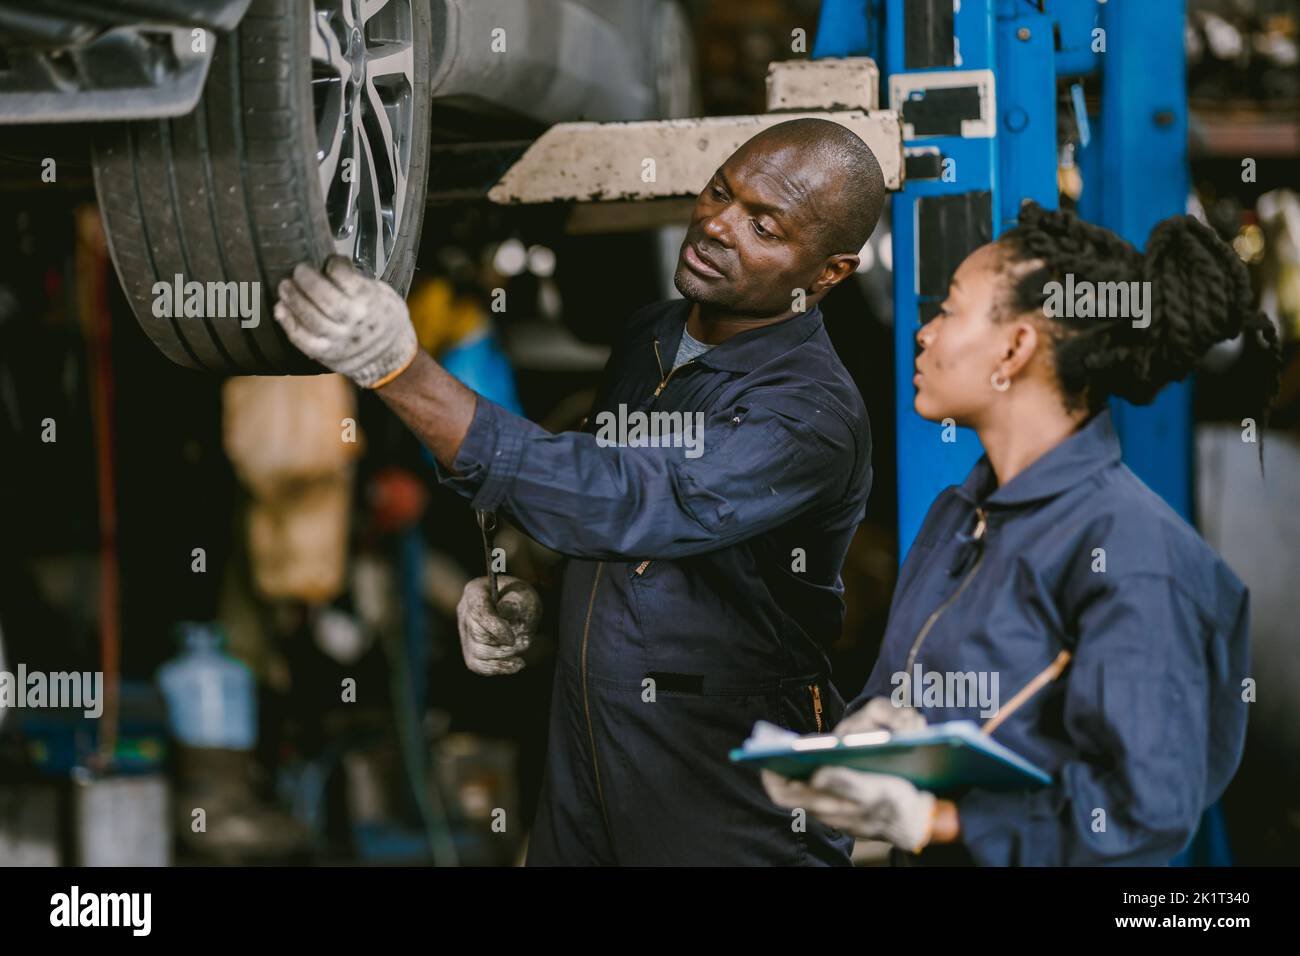 Trabajador de garaje de coches Negro africano trabajando juntos para fijar el soporte de la rueda de vahicle de coches de servicio juntos Foto de stock